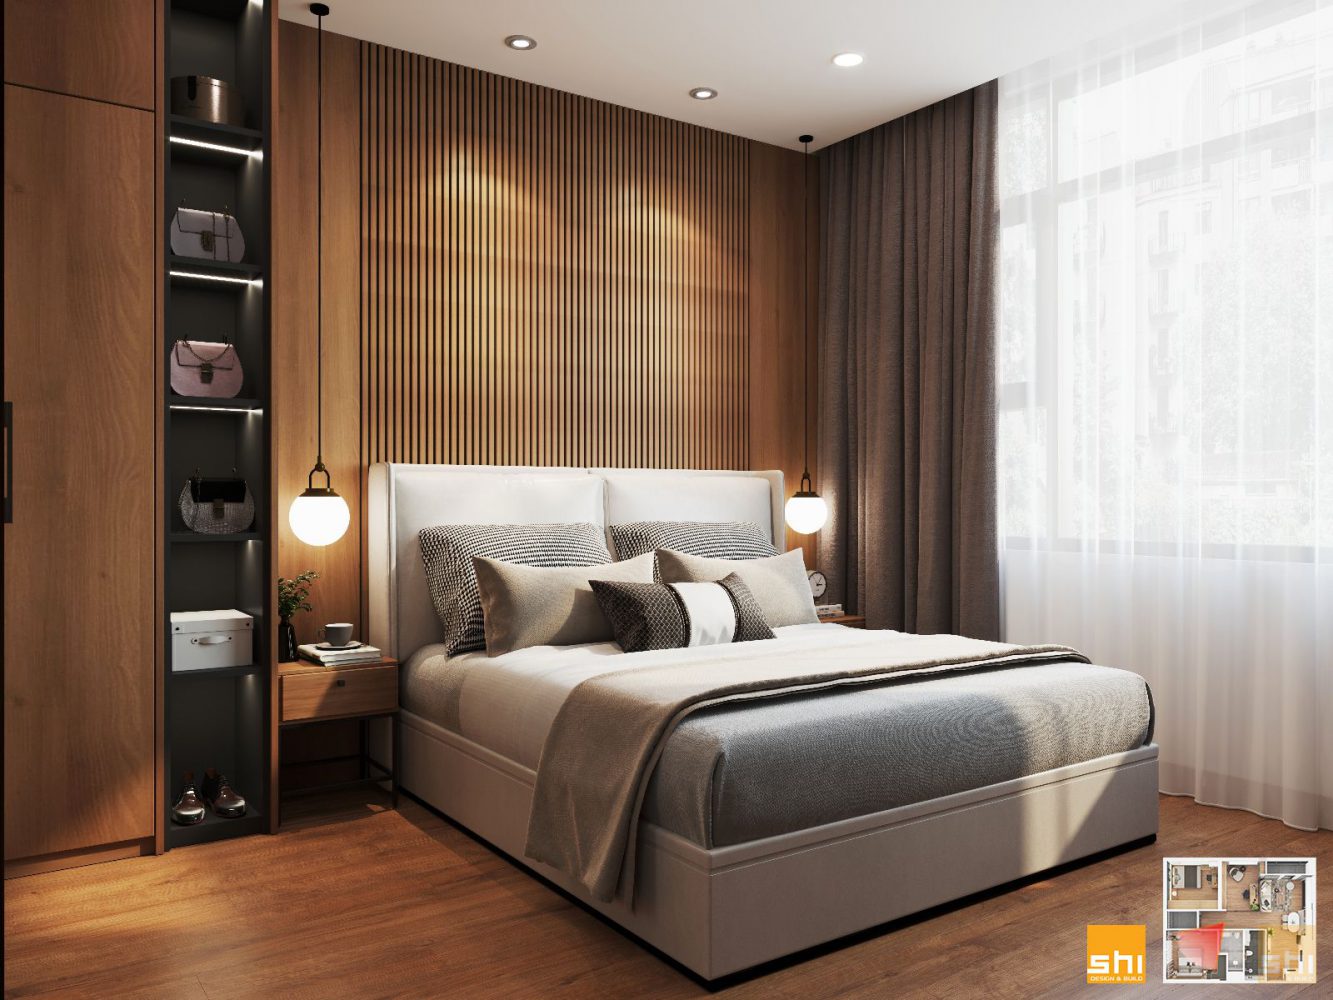 Thiết kế nội thất căn hộ chung cư cao cấp – khu vực phòng ngủ